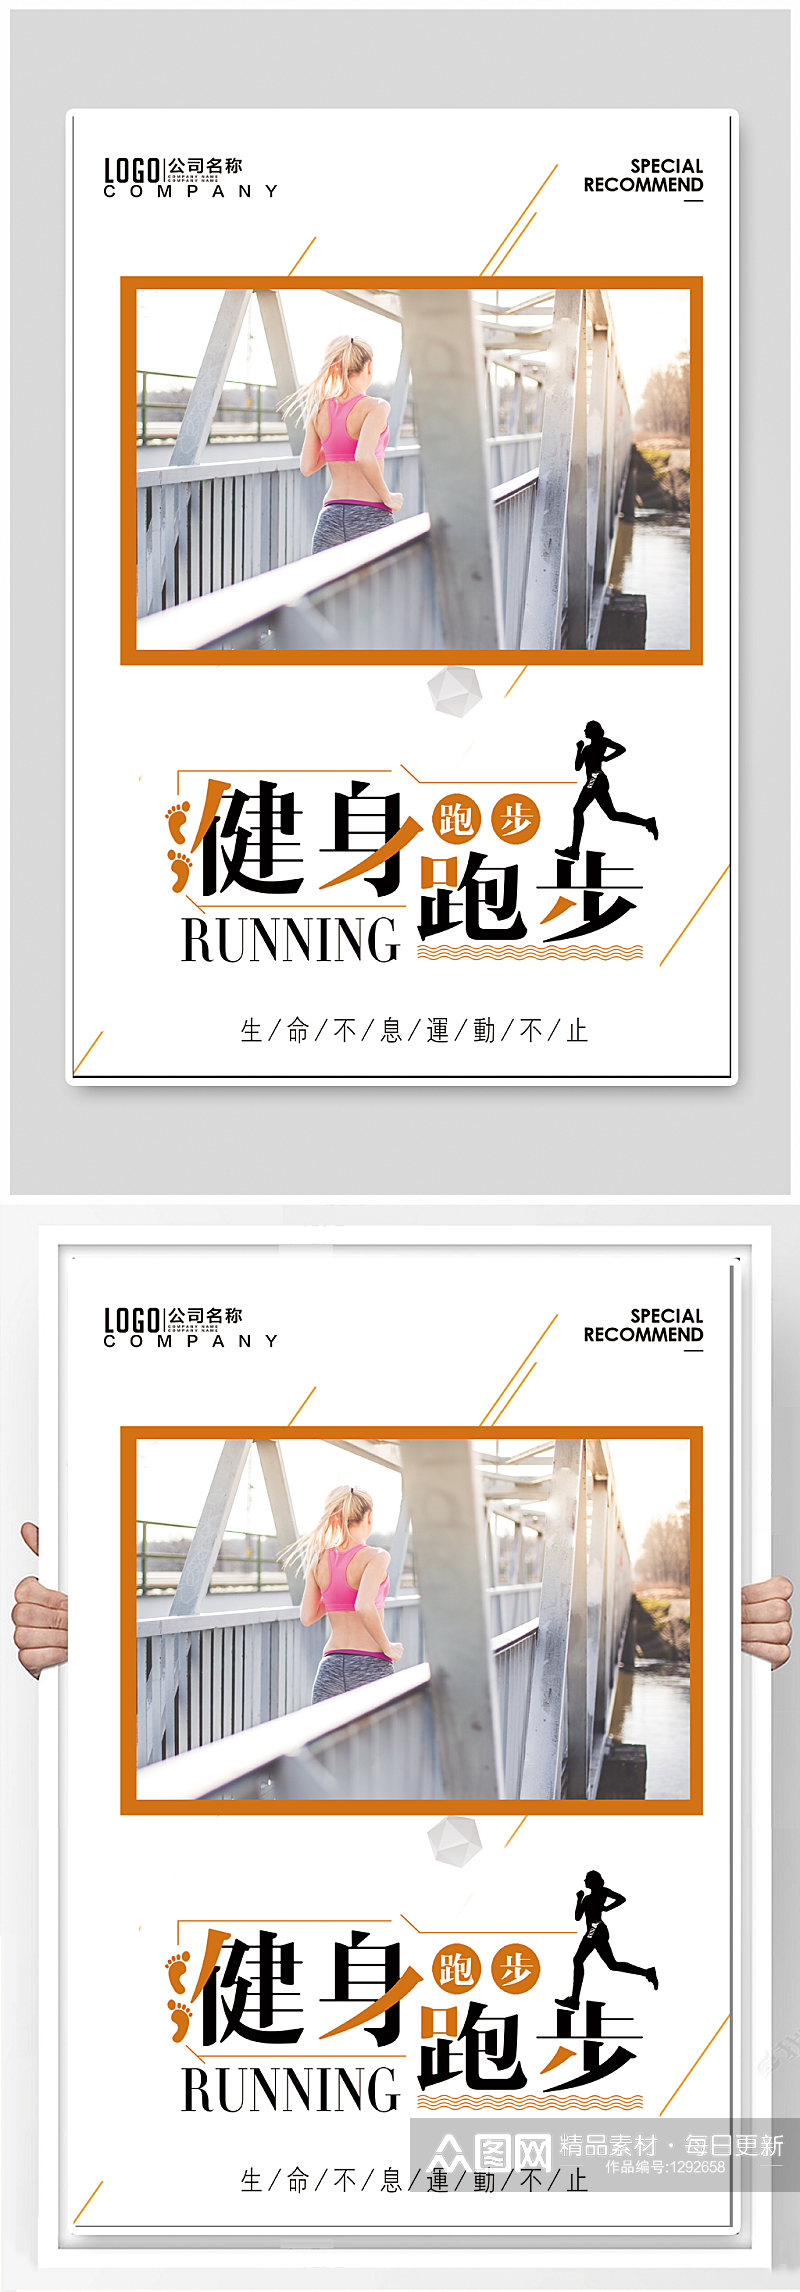 健身跑步运动海报素材